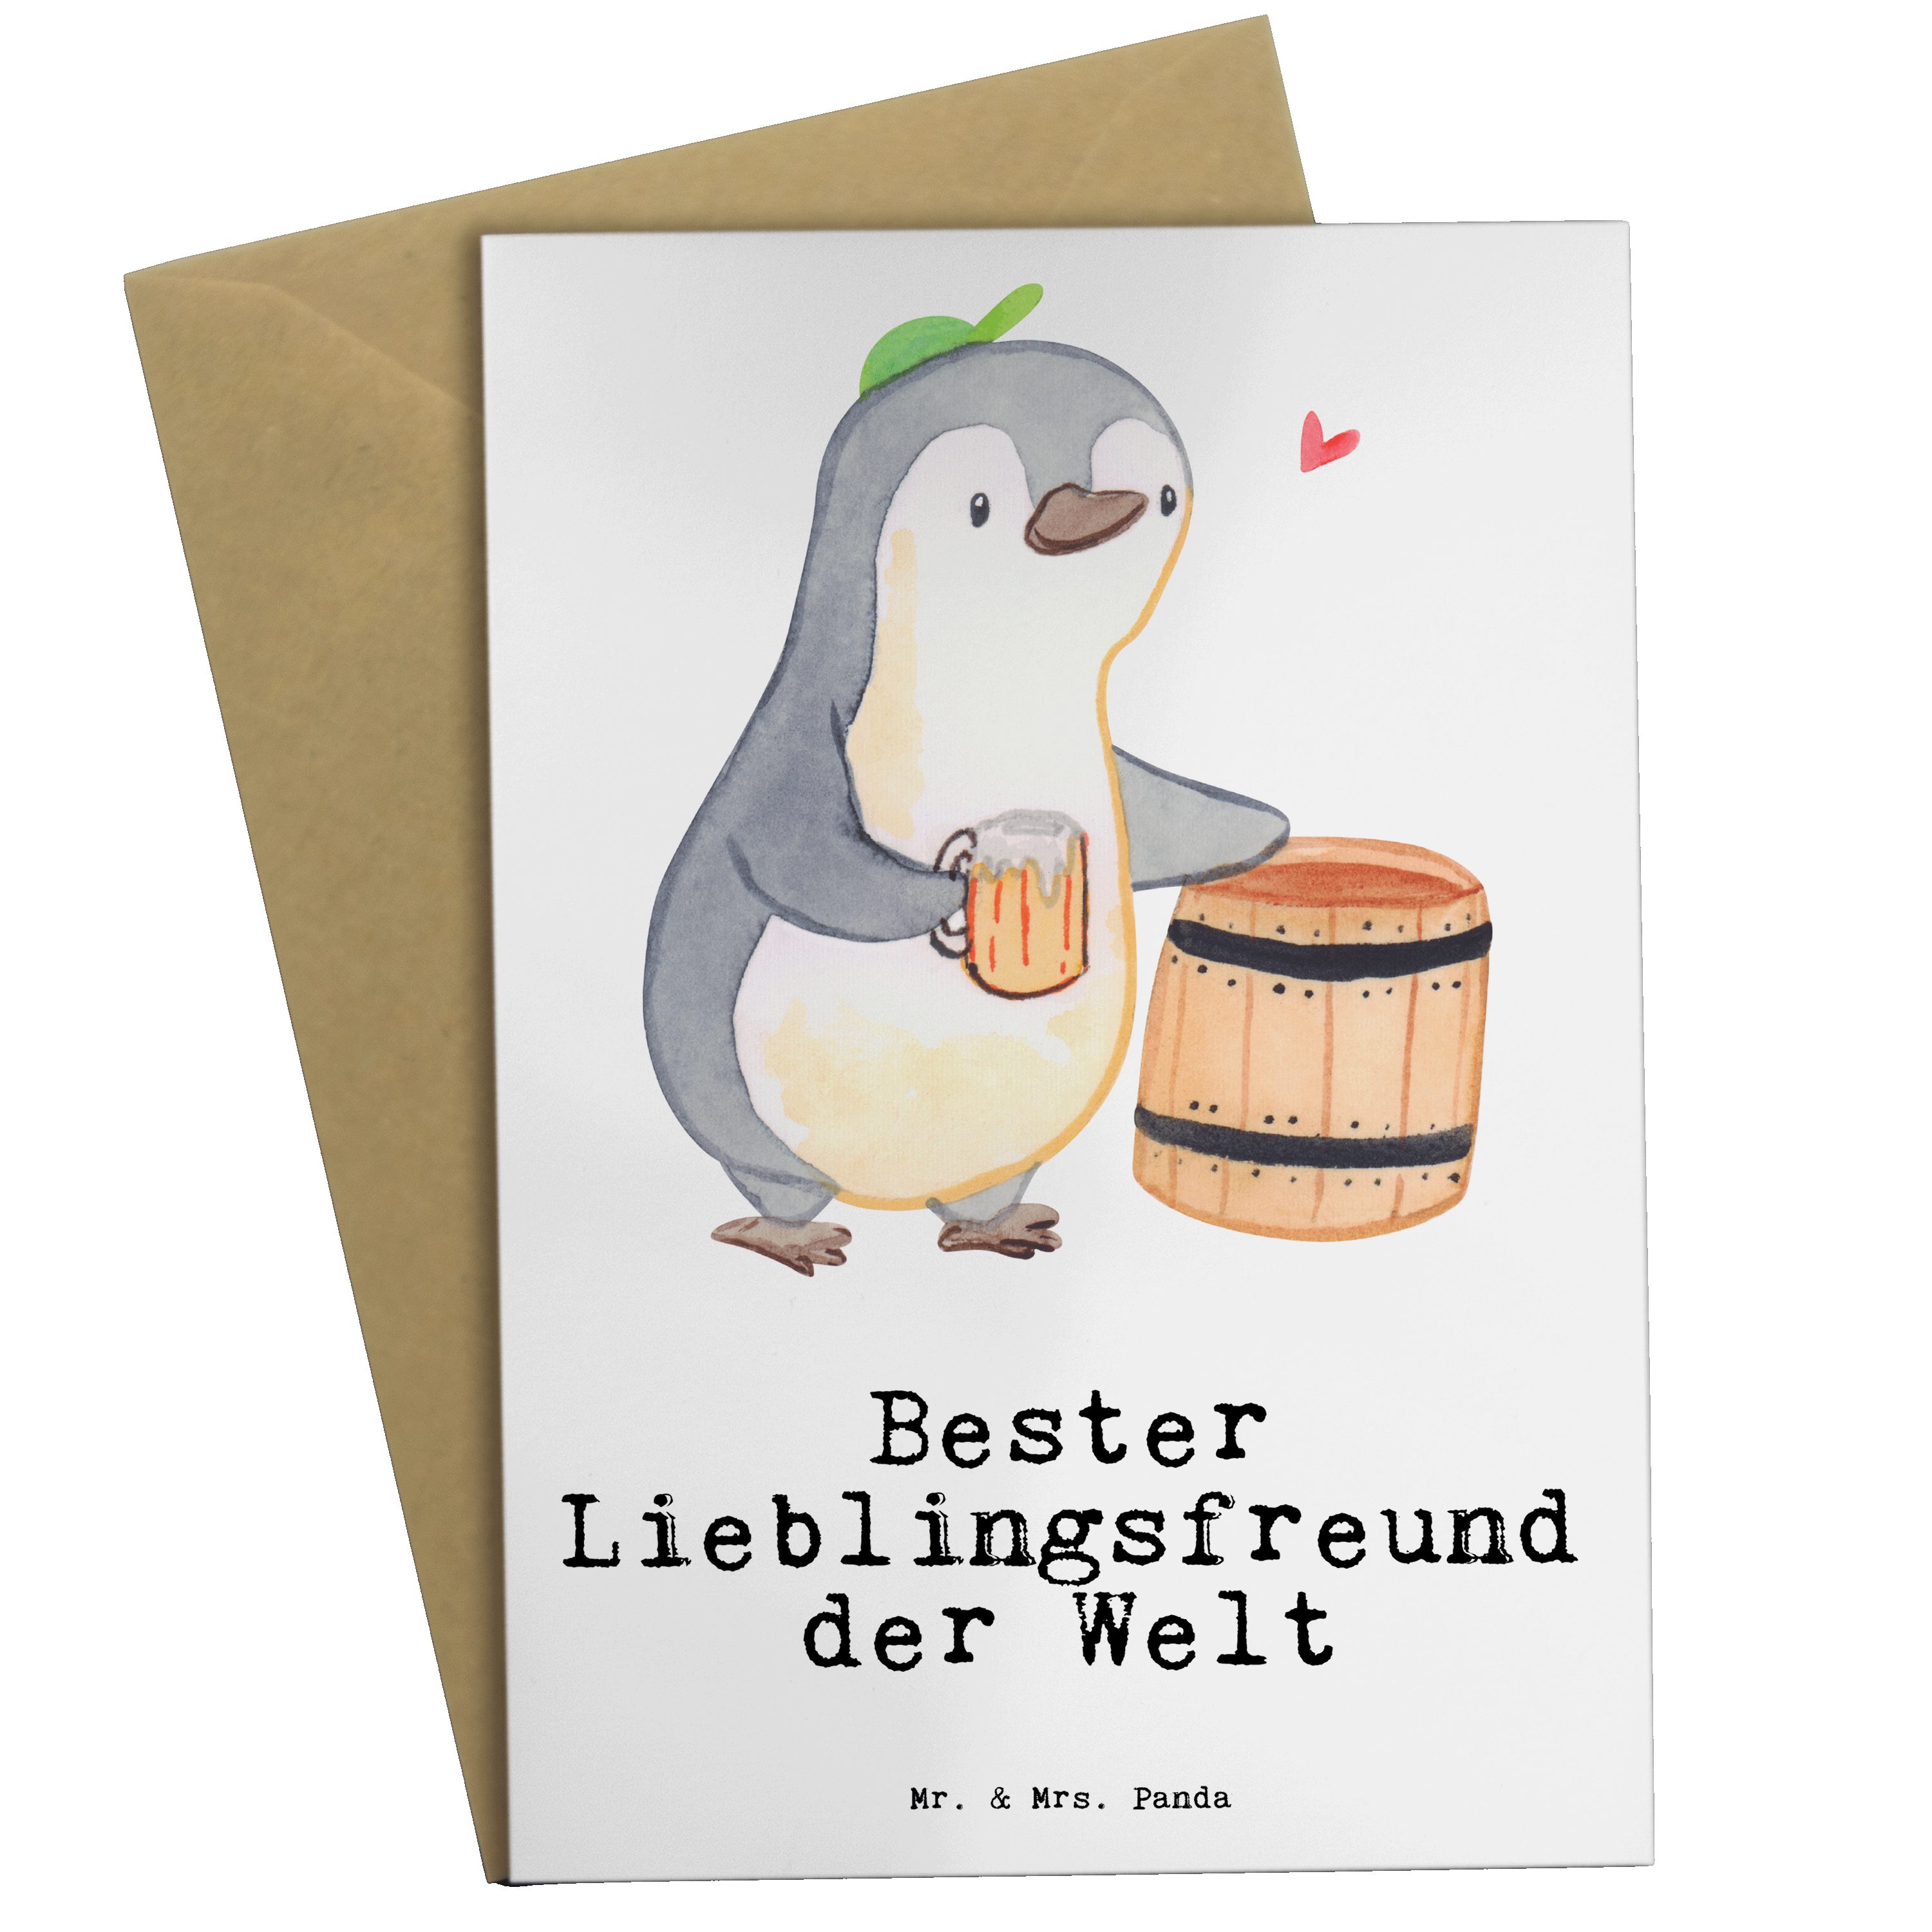 Mr. & Mrs. Panda Postkarte Pinguin Bester Kuschelpartner der Welt - Weiß -  Geschenk, Karte, Geburtstagsgeschenk, verliebt, Freude machen, Ehepartner,  Mitbringsel, Freundin